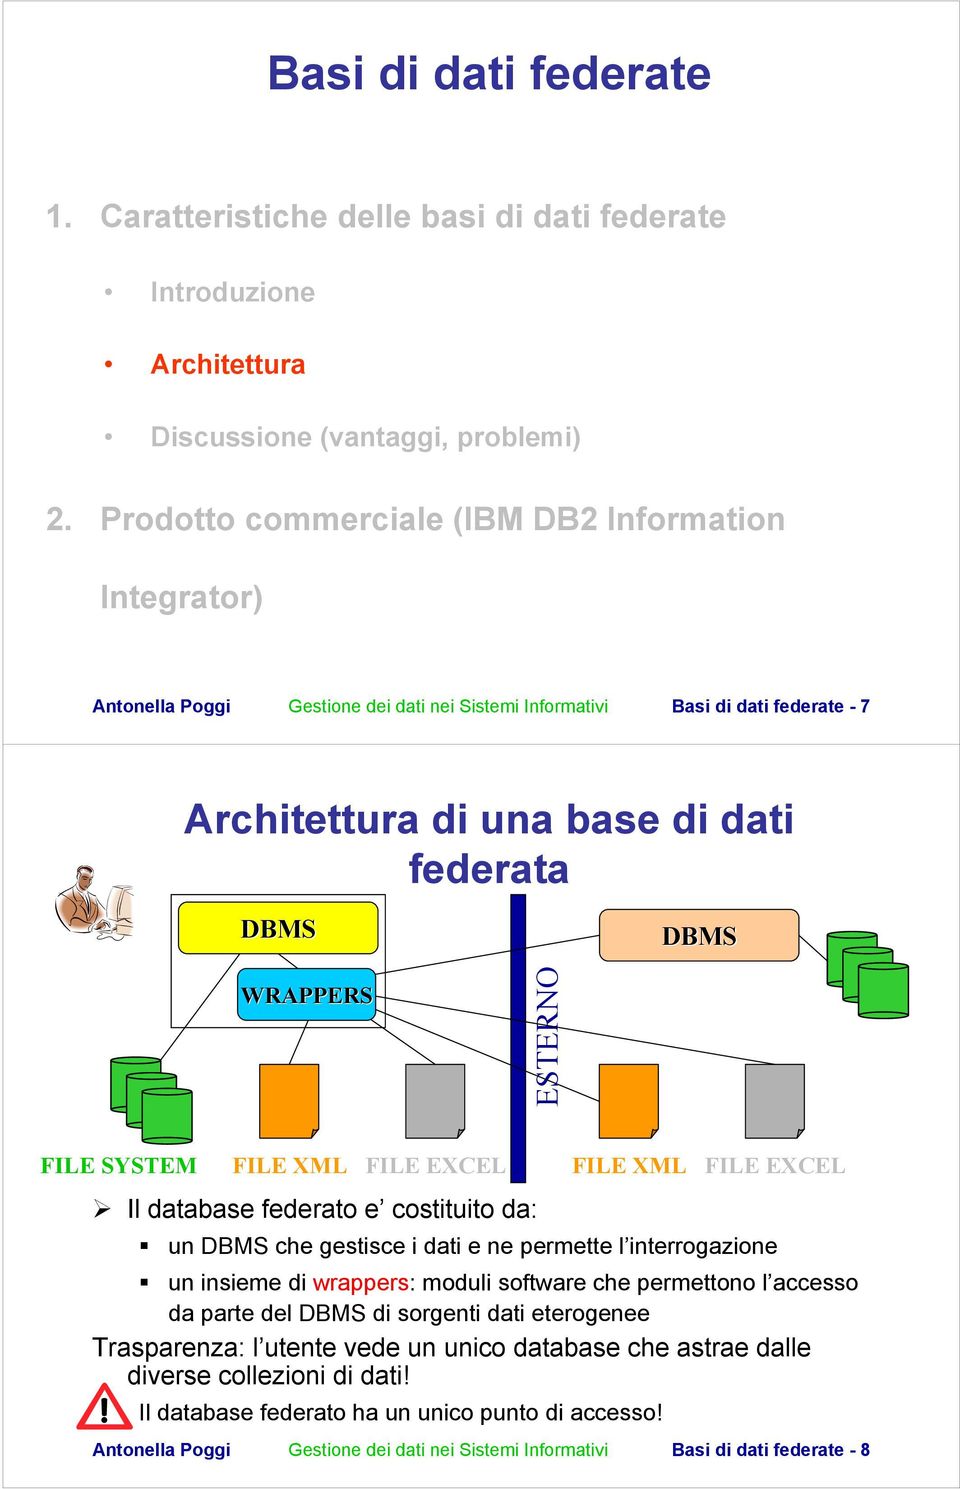 ESTERNO FILE SYSTEM FILE XML FILE EXCEL Il database federato e costituito da: FILE XML FILE EXCEL un DBMS che gestisce i dati e ne permette l interrogazione un insieme di wrappers: moduli software